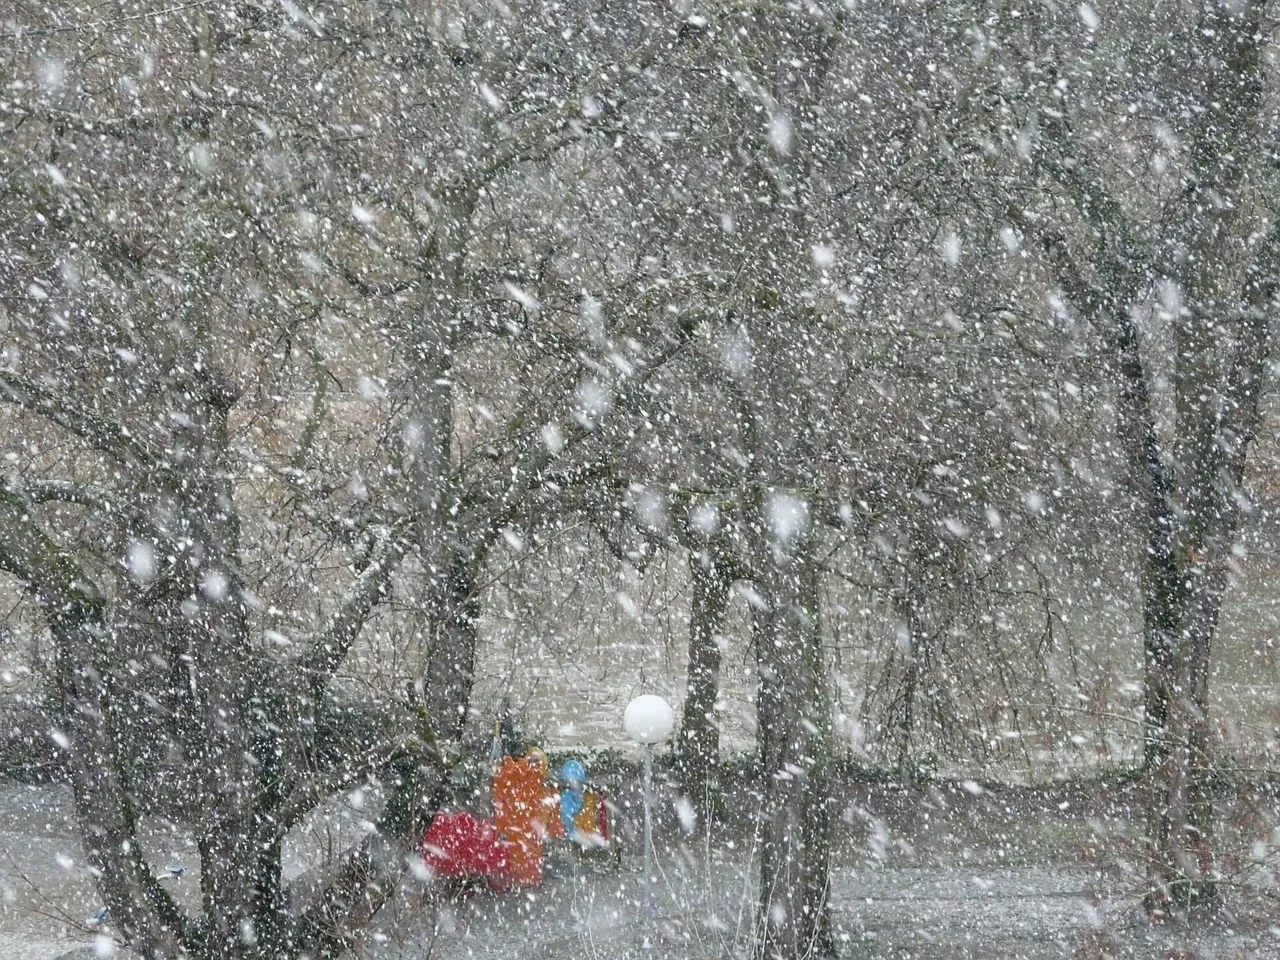 Байден ввел режим чрезвычайной ситуации в Техасе из-за снежного шторма: без электричества 2,6 миллиона человек